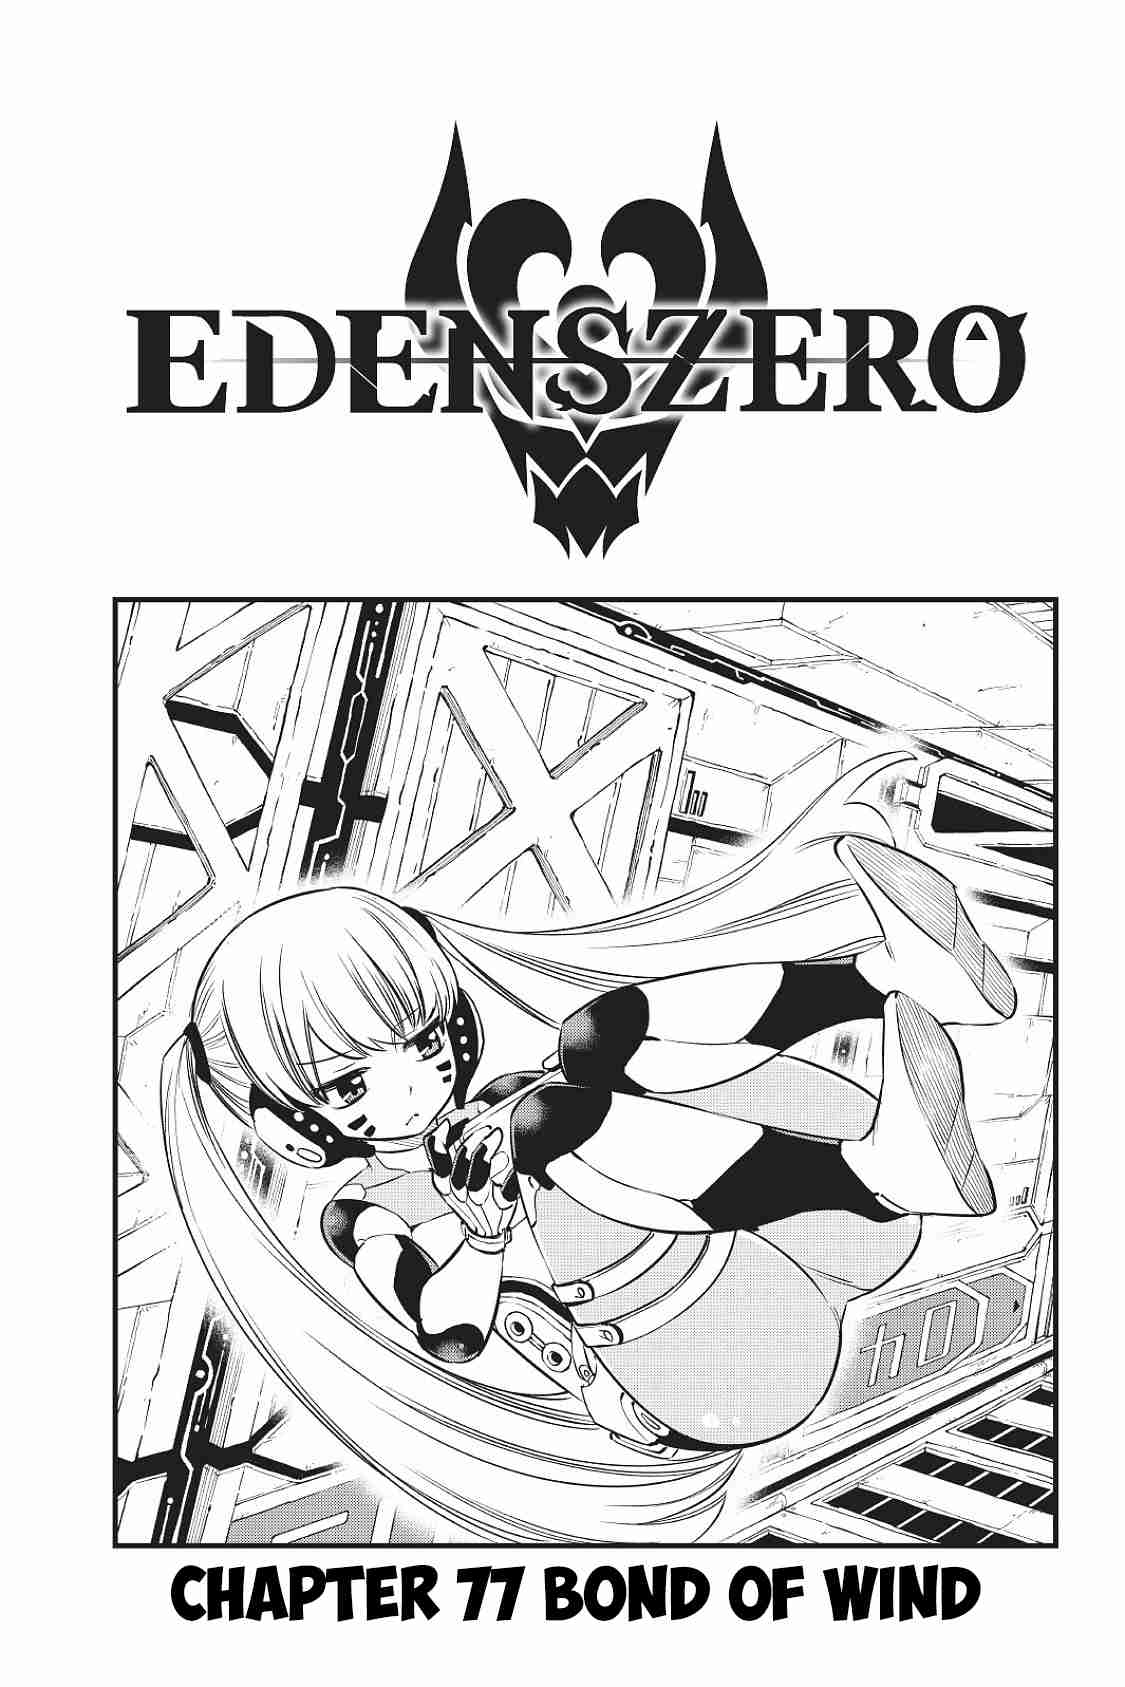 Edens Zero Ch. 77 Bond of Wind